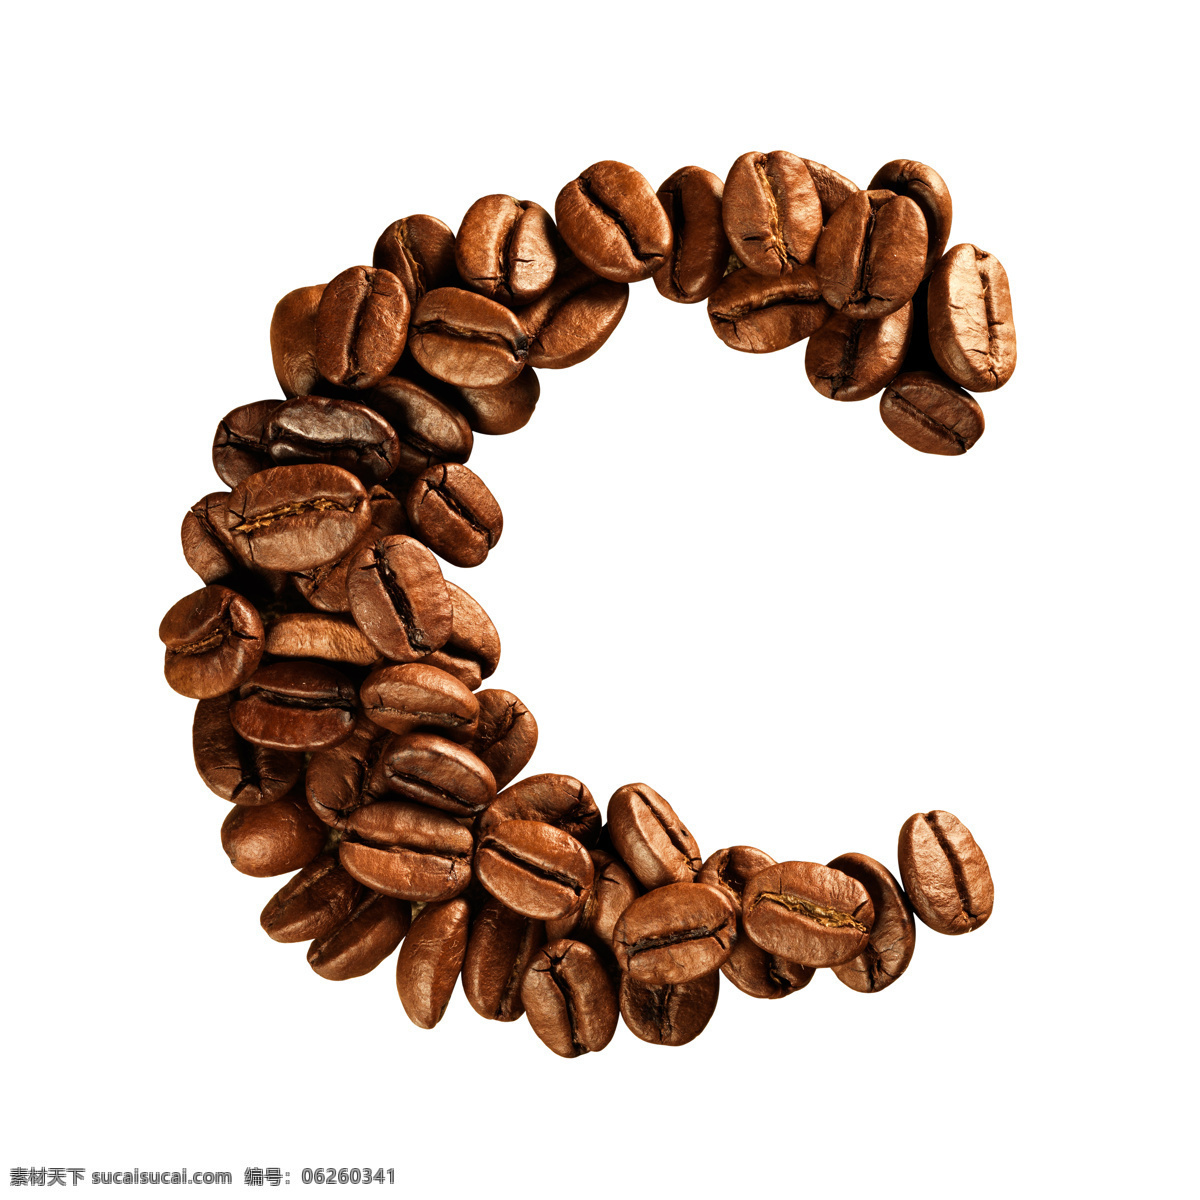 咖啡豆 组成 字母 c 咖啡 文字 艺术字体 书画文字 文化艺术 白色